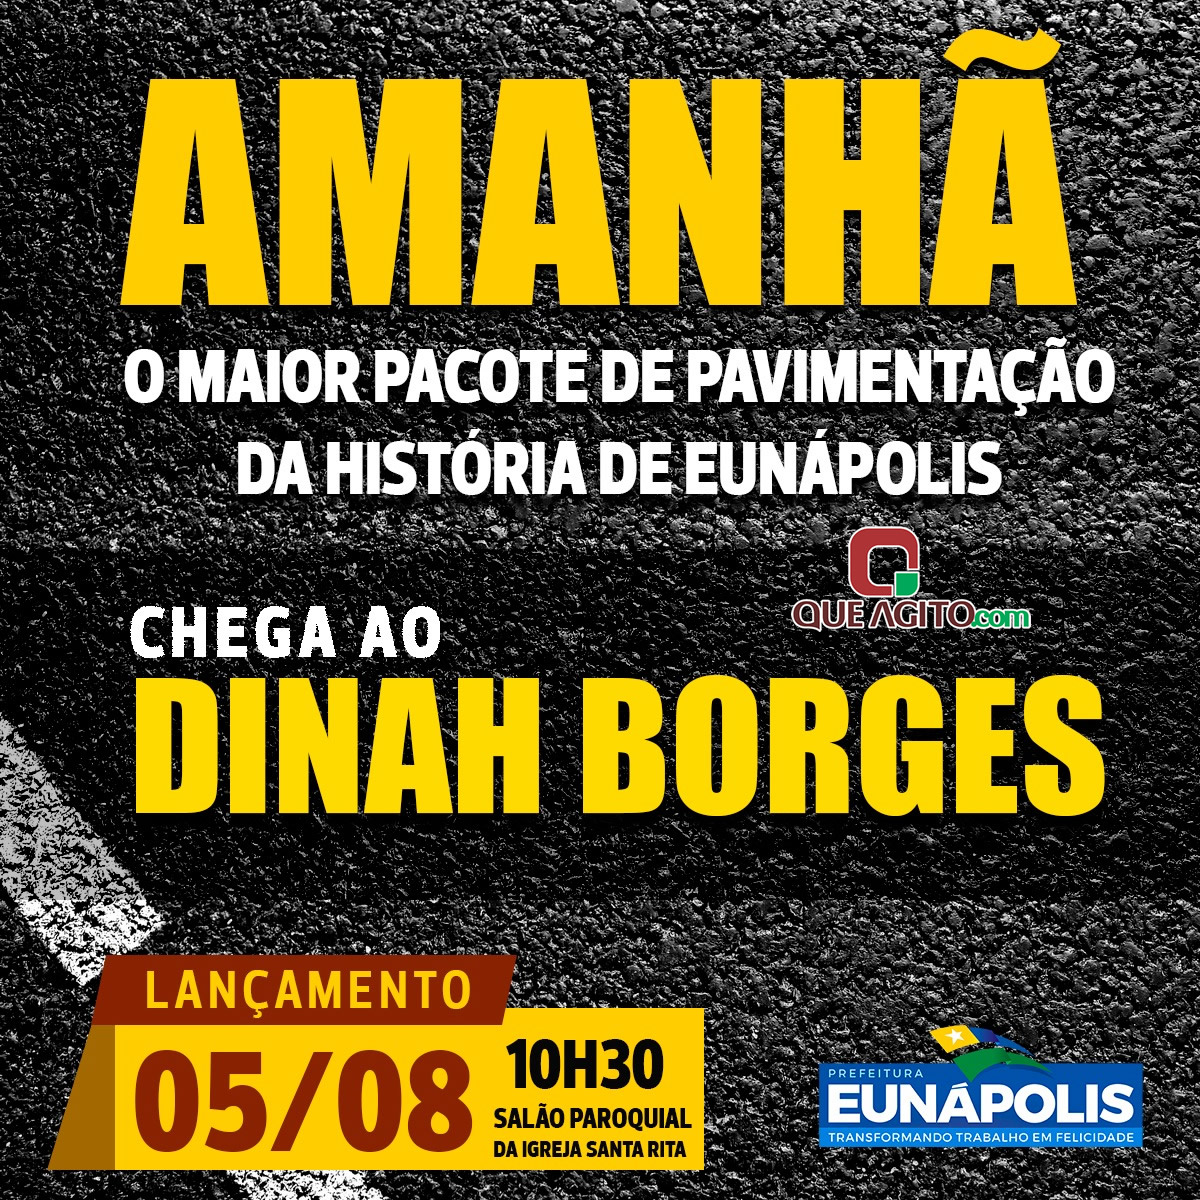 Prefeito Robério lançará pacote de pavimentação no Dinah Borges neste sábado (05/08) 5